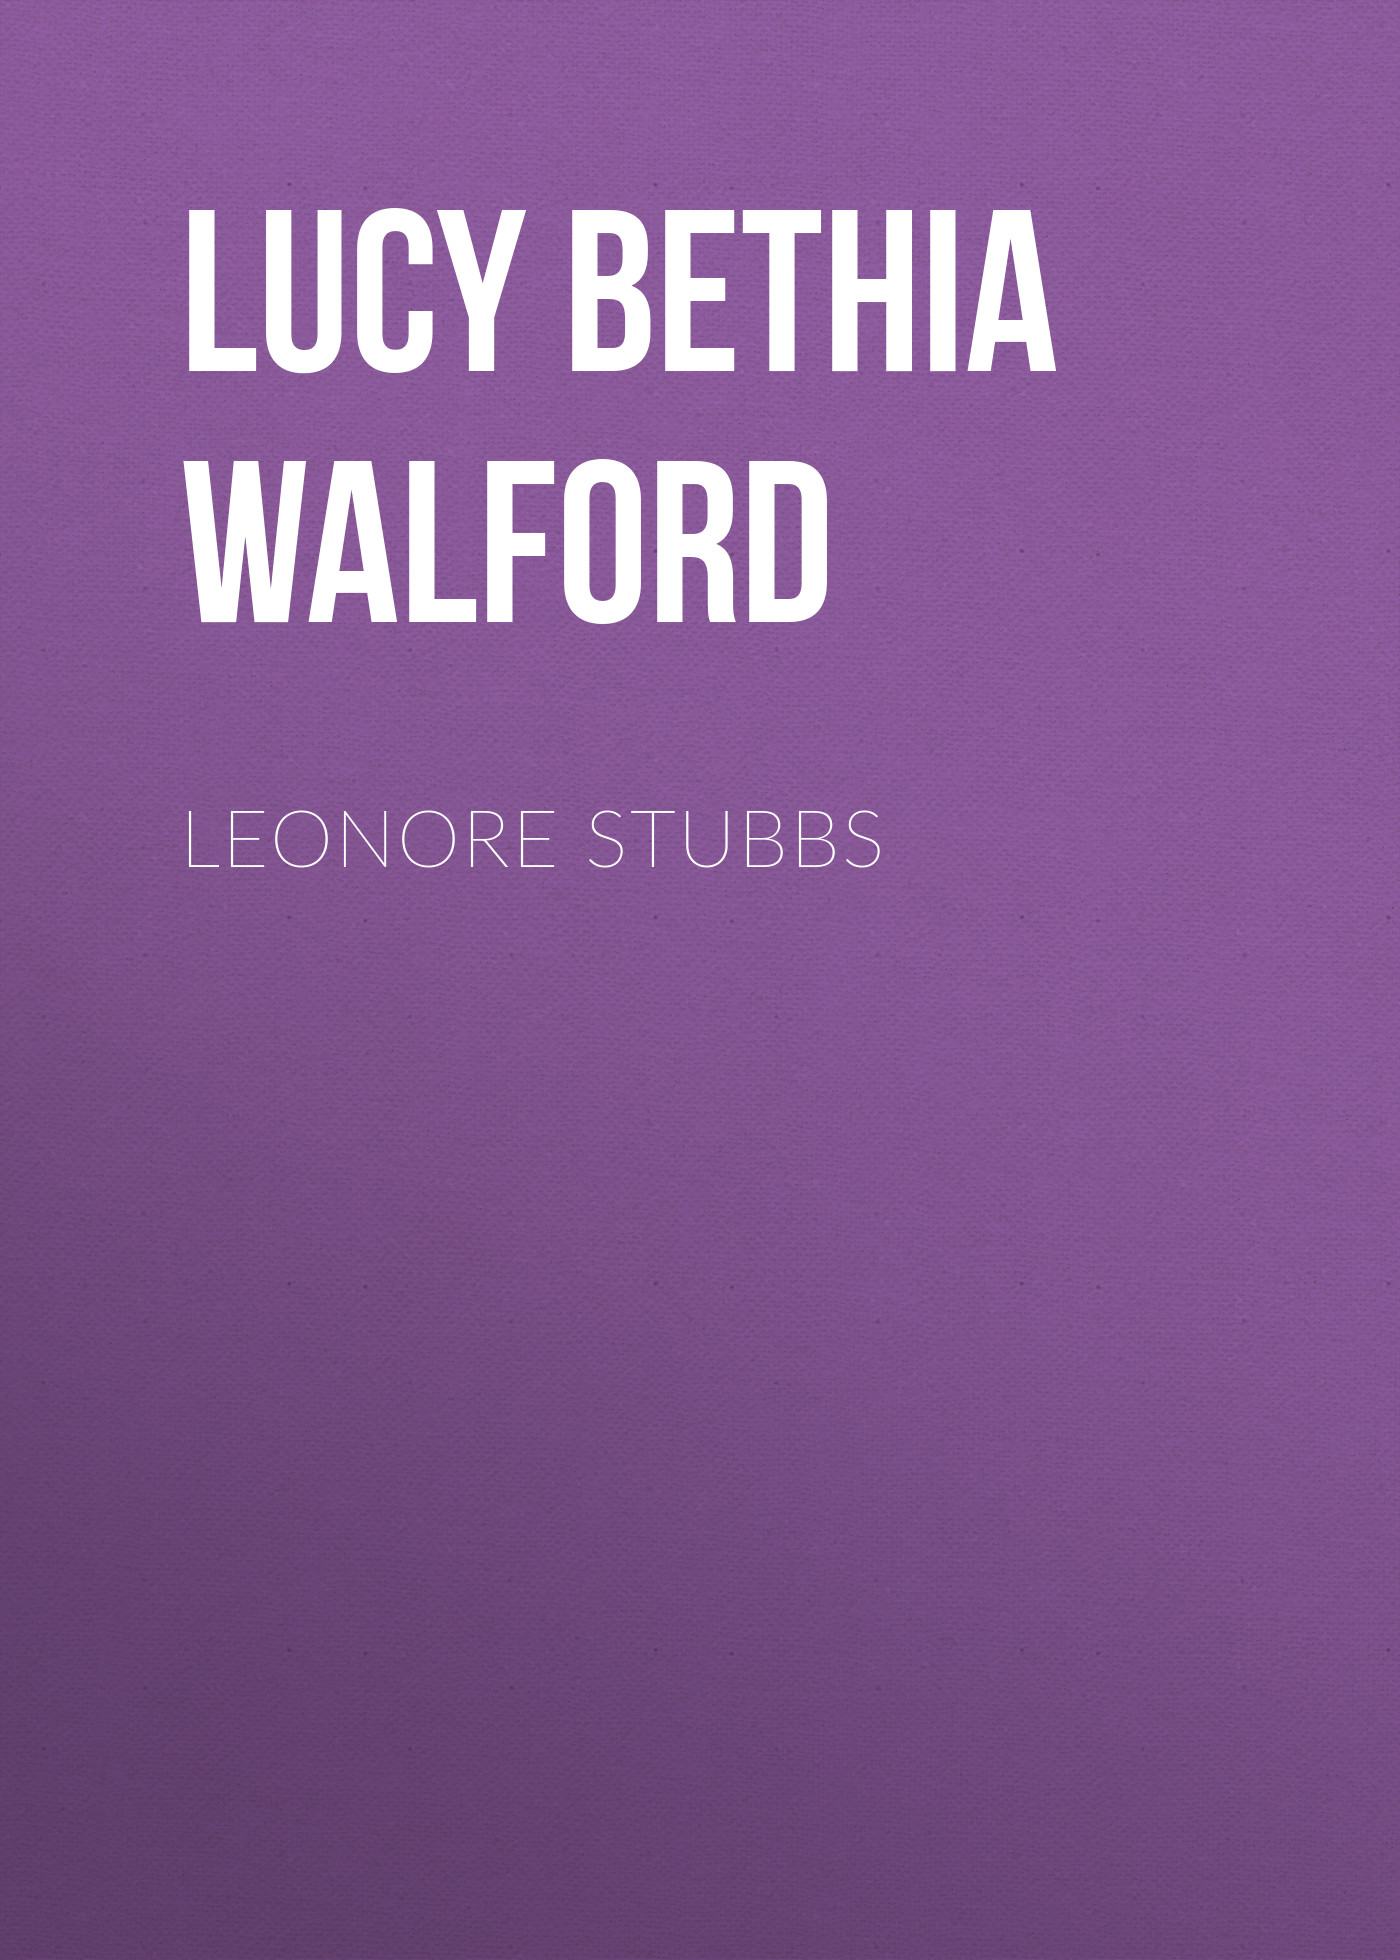 Книга Leonore Stubbs из серии , созданная Lucy Walford, может относится к жанру Зарубежная классика, Литература 20 века, Зарубежная старинная литература. Стоимость электронной книги Leonore Stubbs с идентификатором 34283304 составляет 0 руб.